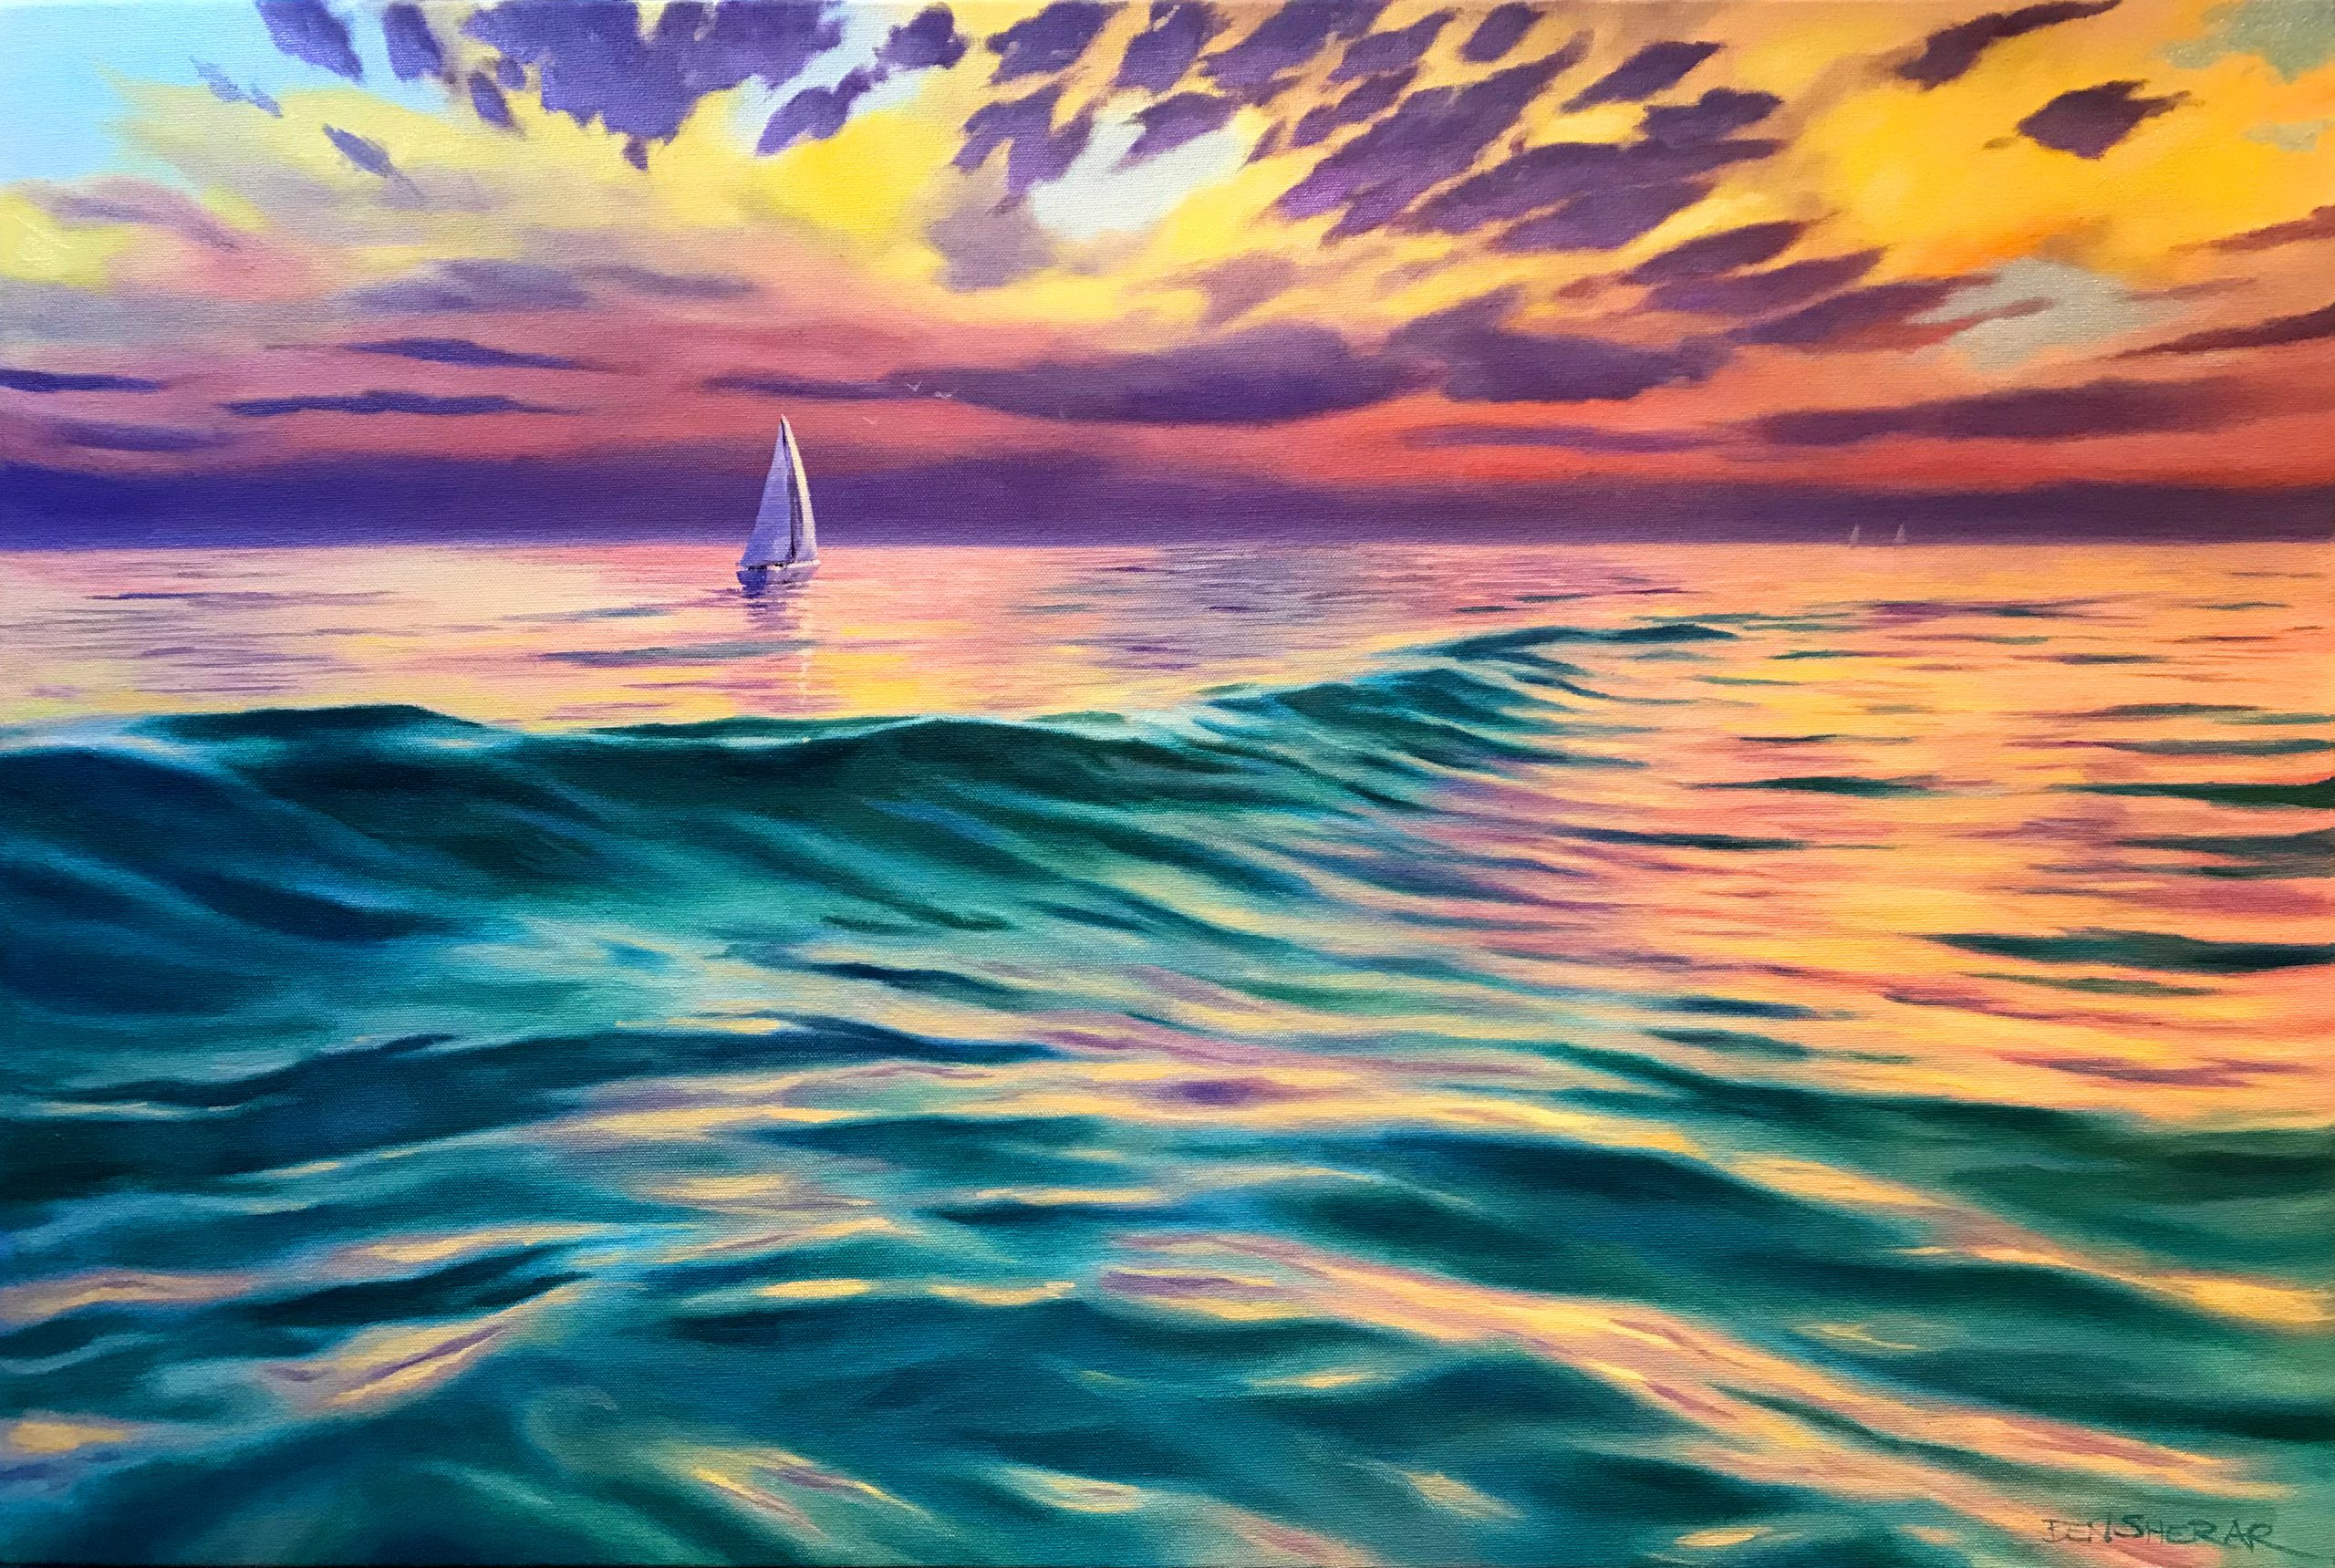 An original oil painting by Western Australian Artist Ben Sherar depicting a sunset over the ocean